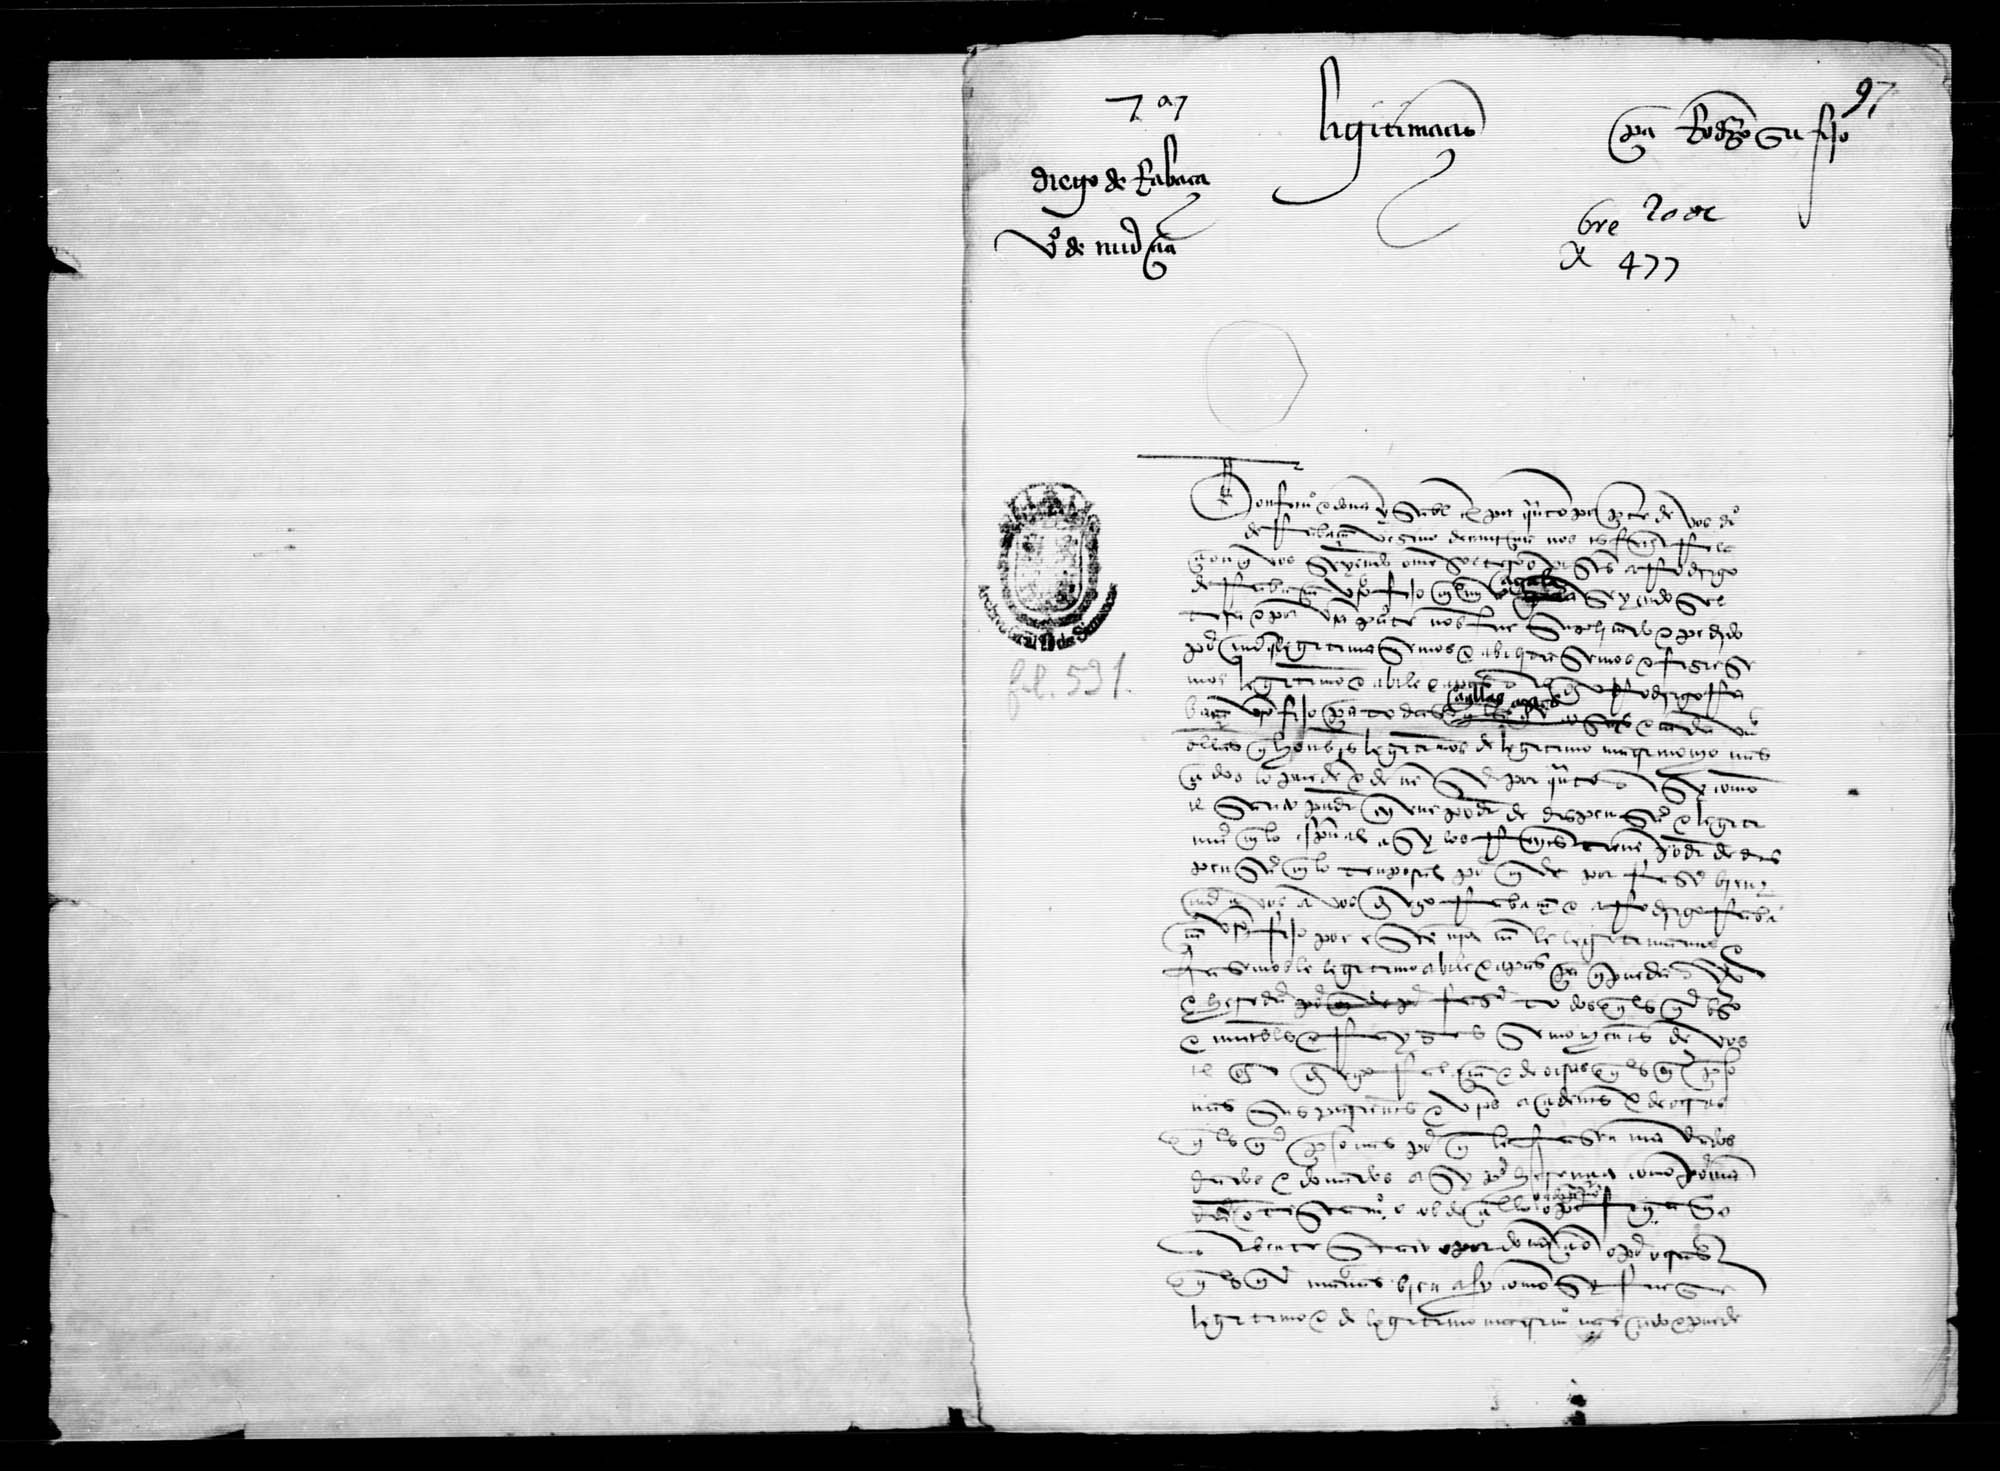 Legitimación de Rodrigo de Rabaza hecha a petición de su padre Diego de Rabaza, vecino de Murcia, el cual lo tuvo siendo soltero,  con María Zagala, mujer soltera.